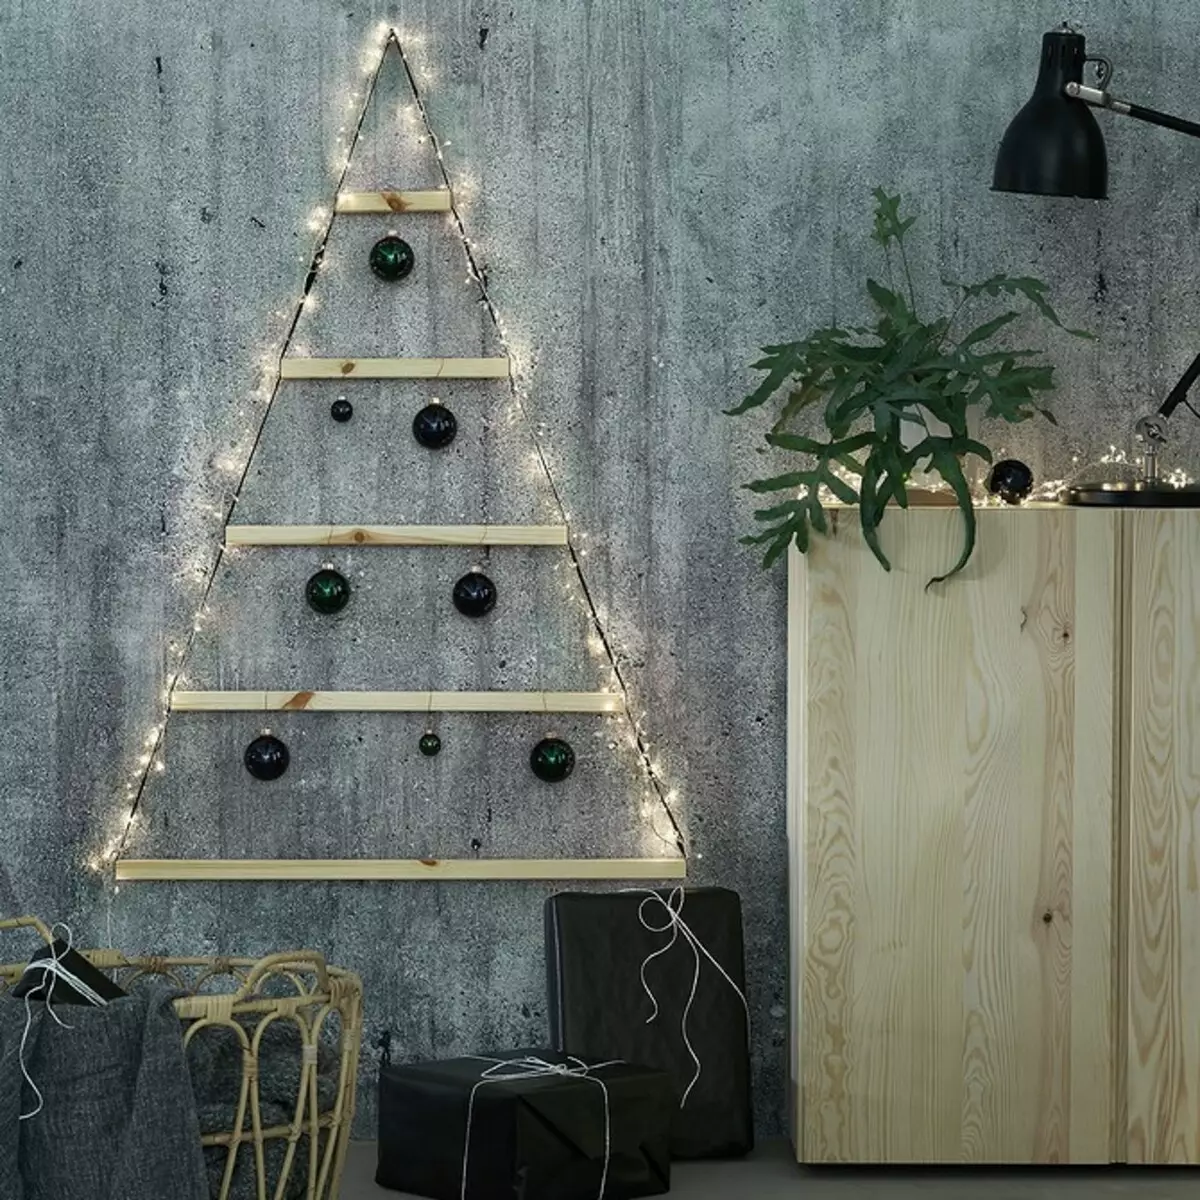 Μπορείτε να επιλέξετε: 9 Χριστουγεννιάτικα στολίδια από την Ikea 1312_17